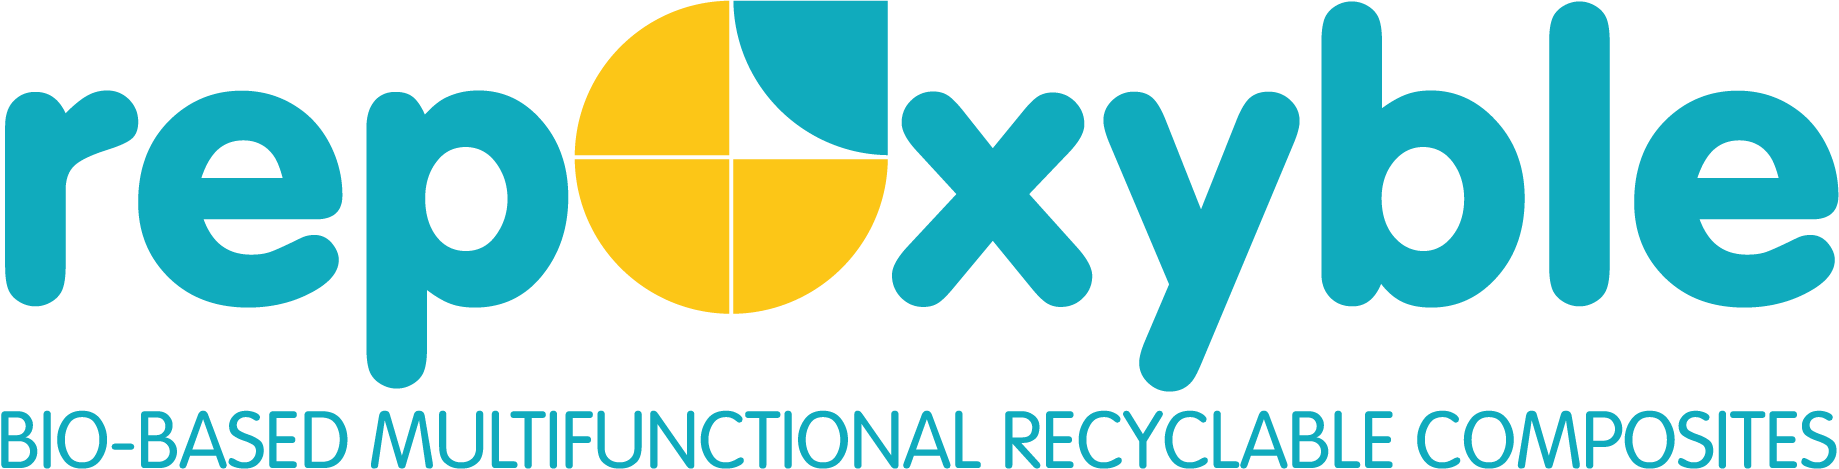 Logo Repoxyble